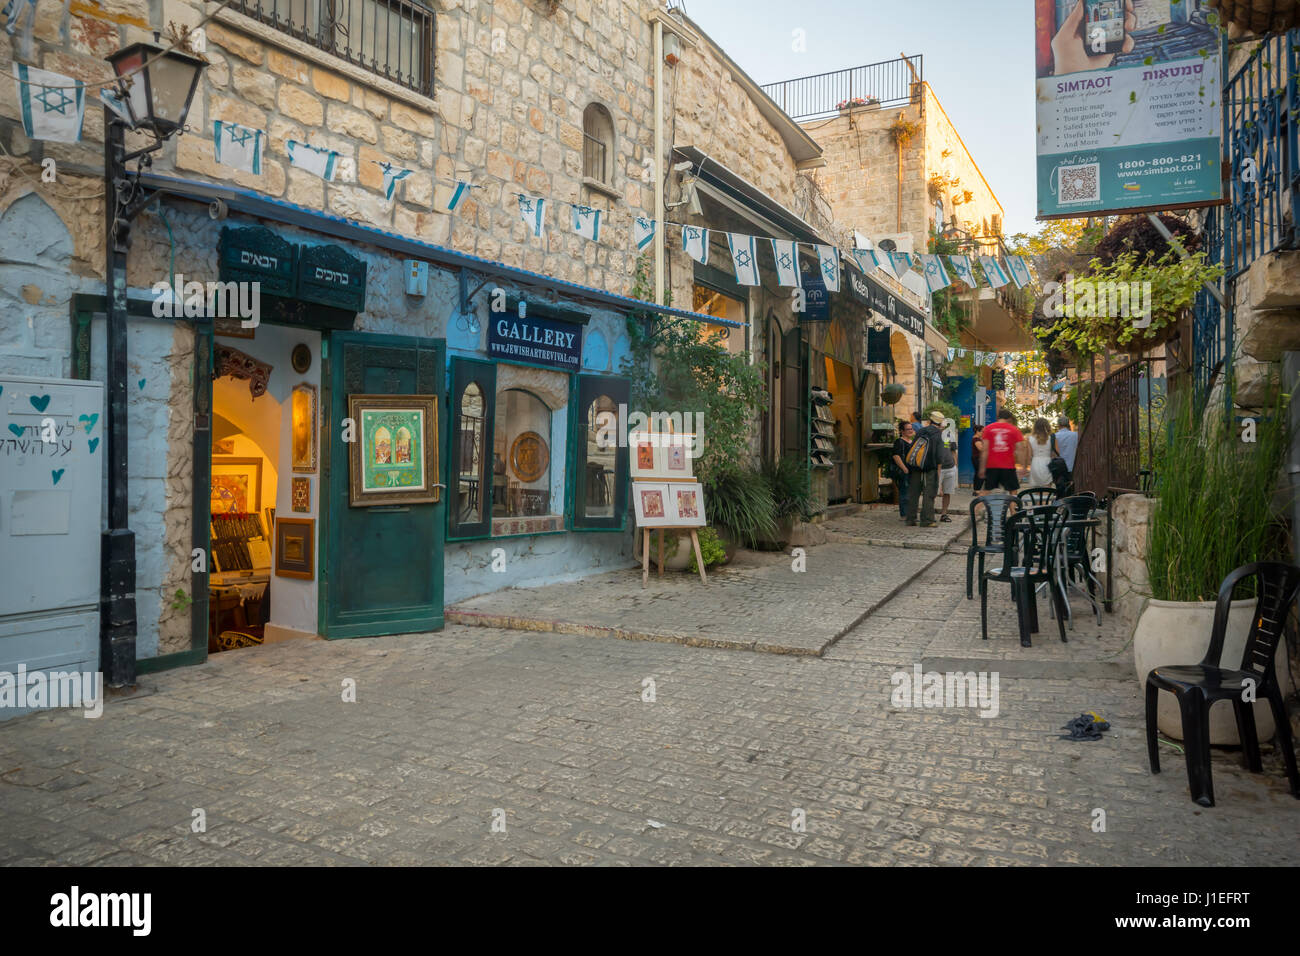 La SAFED, Israele - 14 settembre 2016: scena in un vicolo del quartiere ebraico, con le imprese locali e le gallerie, la gente del posto e i turisti, in Safed (Tzfat Foto Stock